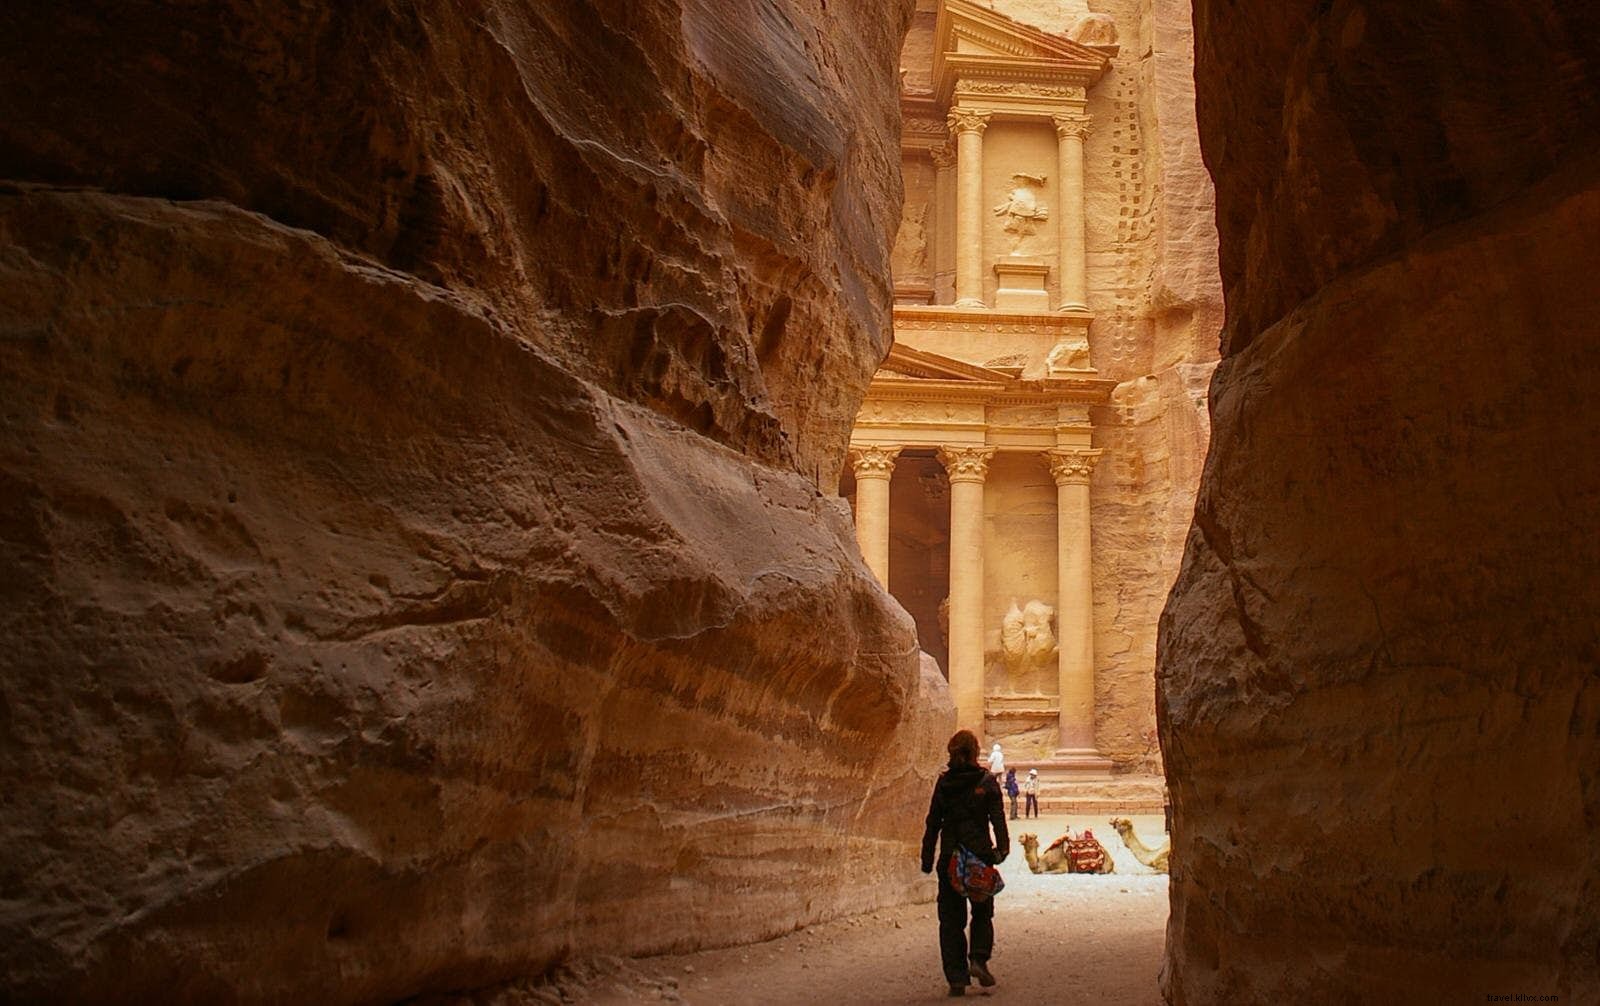 Una caminata sagrada:de Wadi Dana a Petra a lo largo del sendero Jordan 